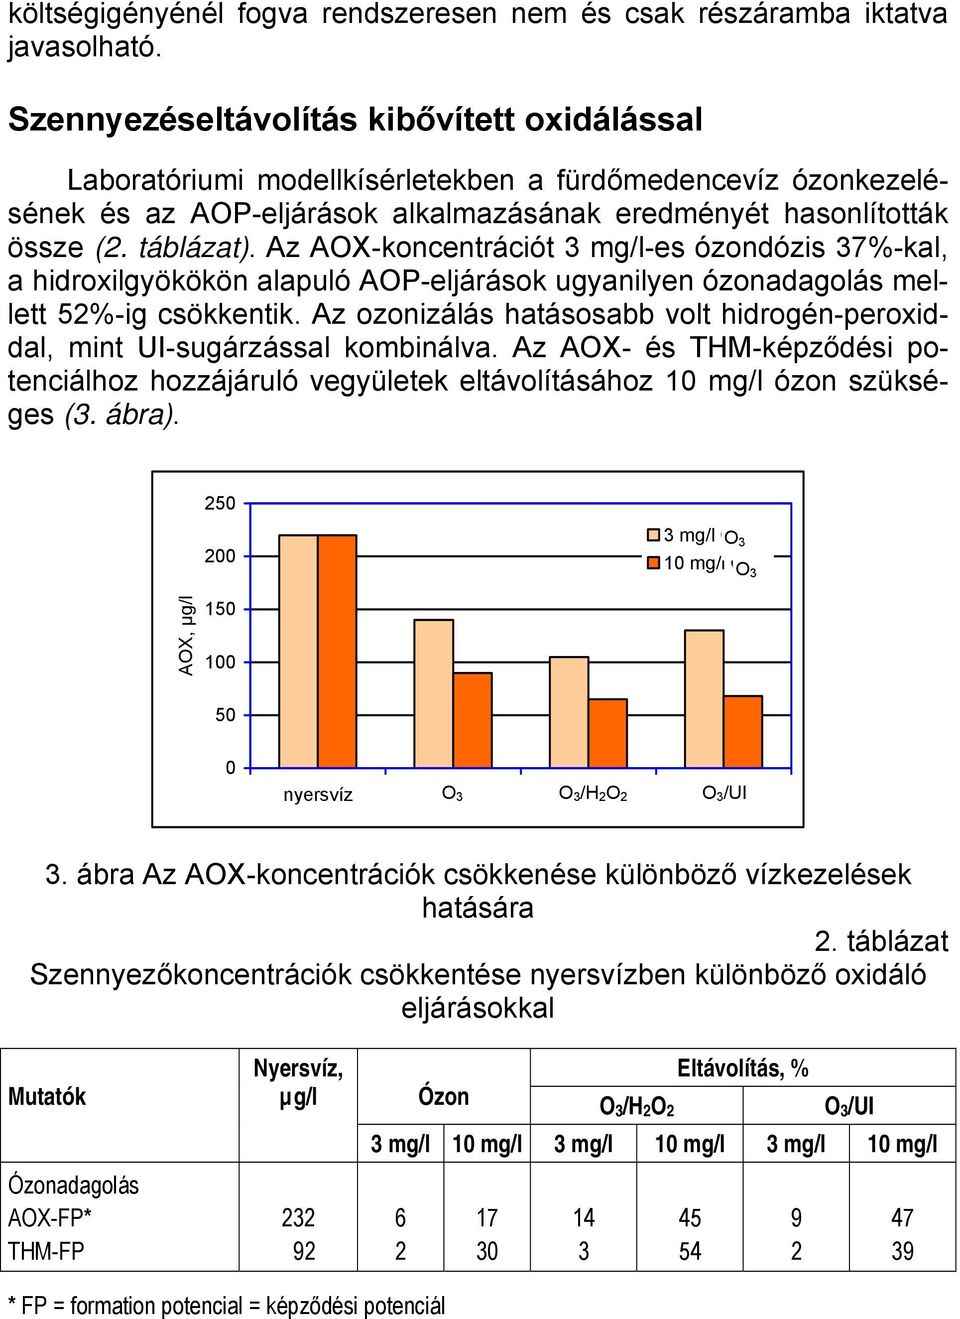 Az AOX-koncentrációt 3 mg/l-es ózondózis 37%-kal, a hidroxilgyökökön alapuló AOP-eljárások ugyanilyen ózonadagolás mellett 52%-ig csökkentik.